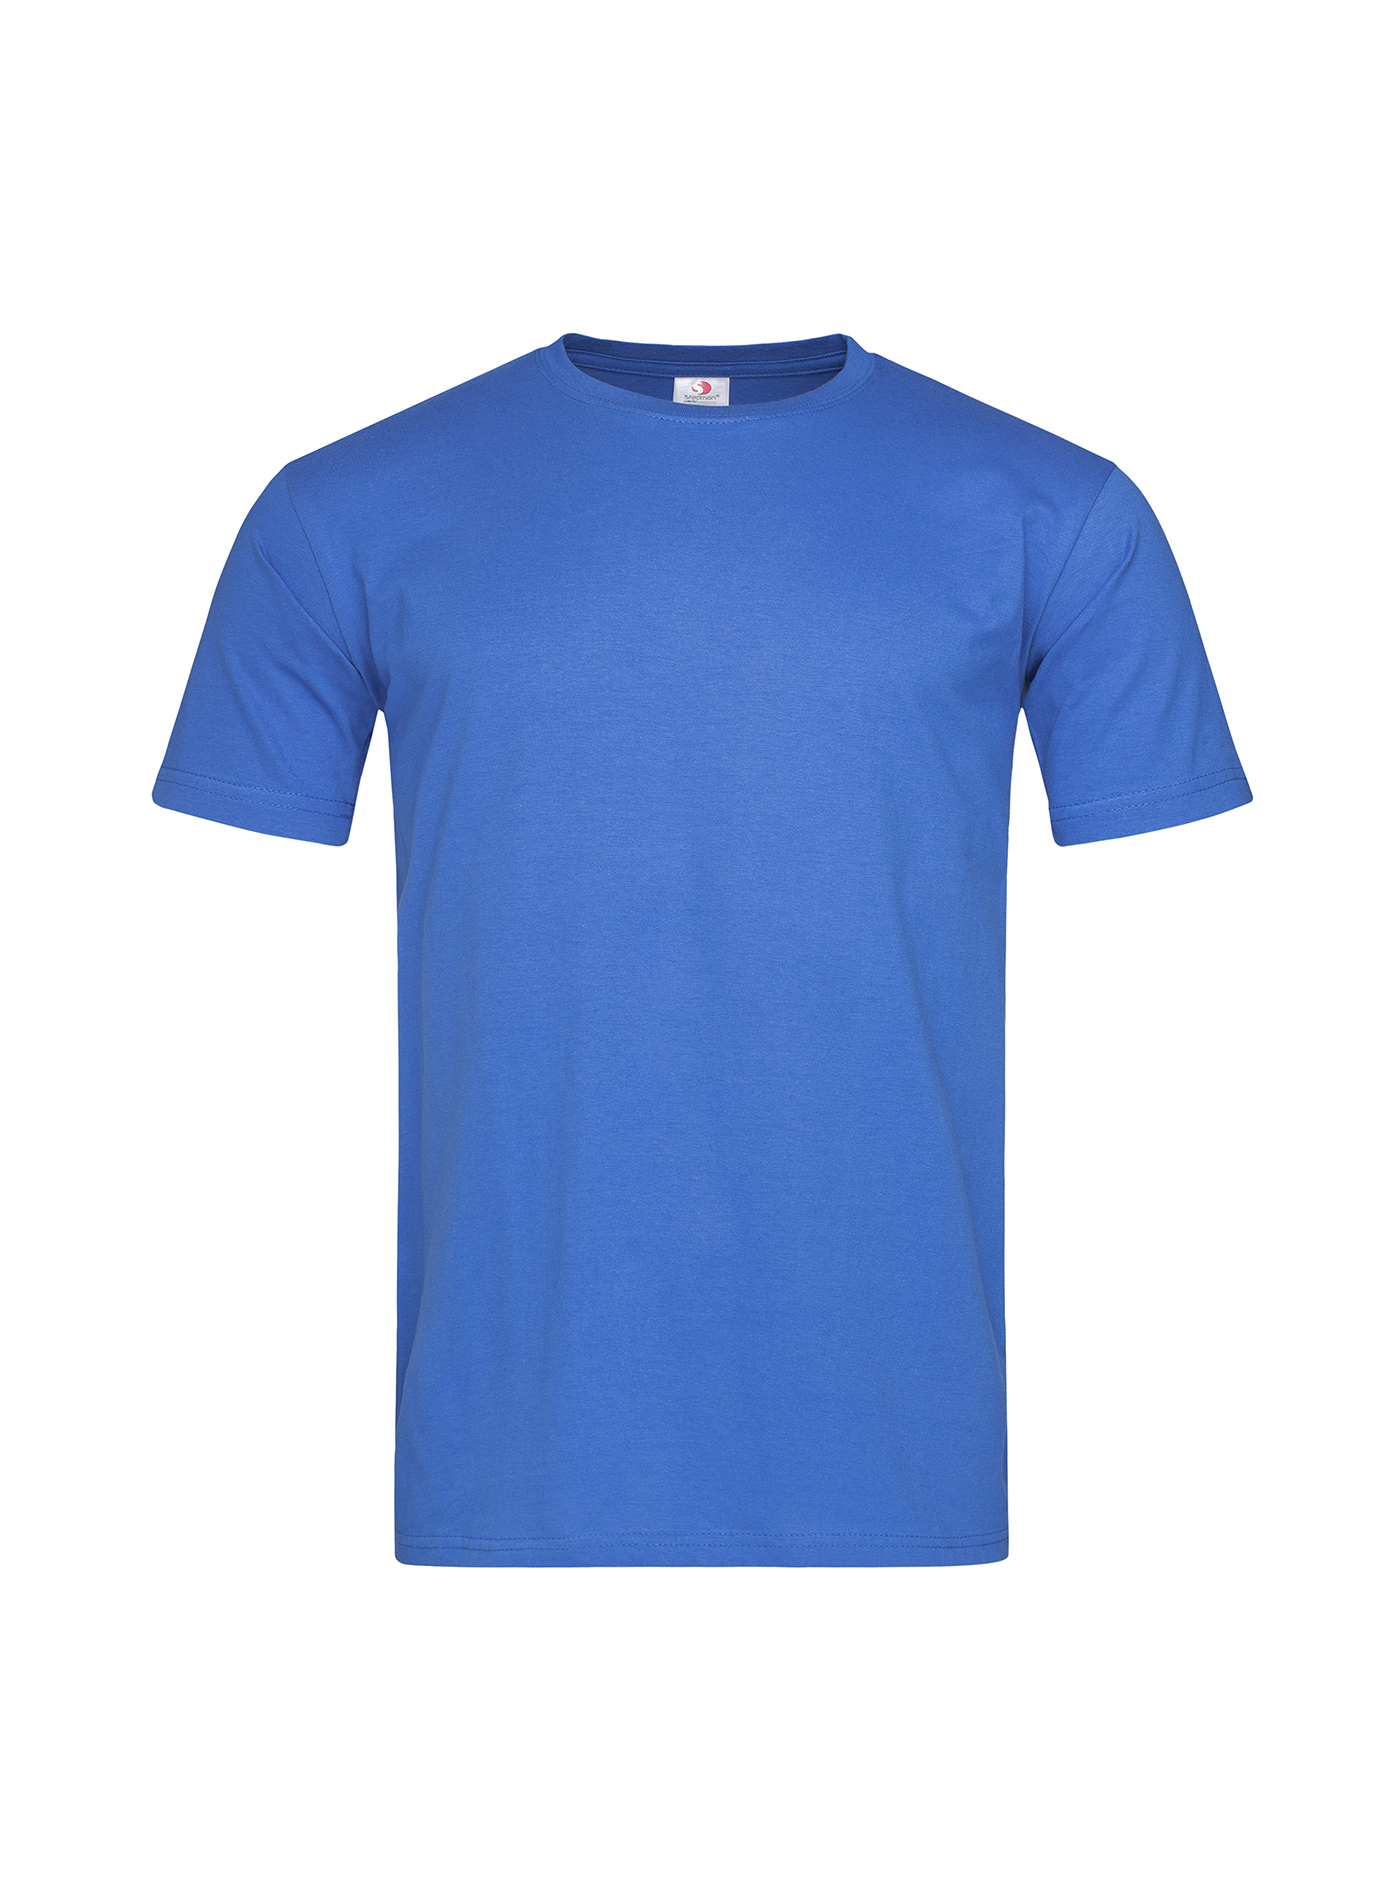 Pánské tričko Stedman Fitted - Královská modrá L